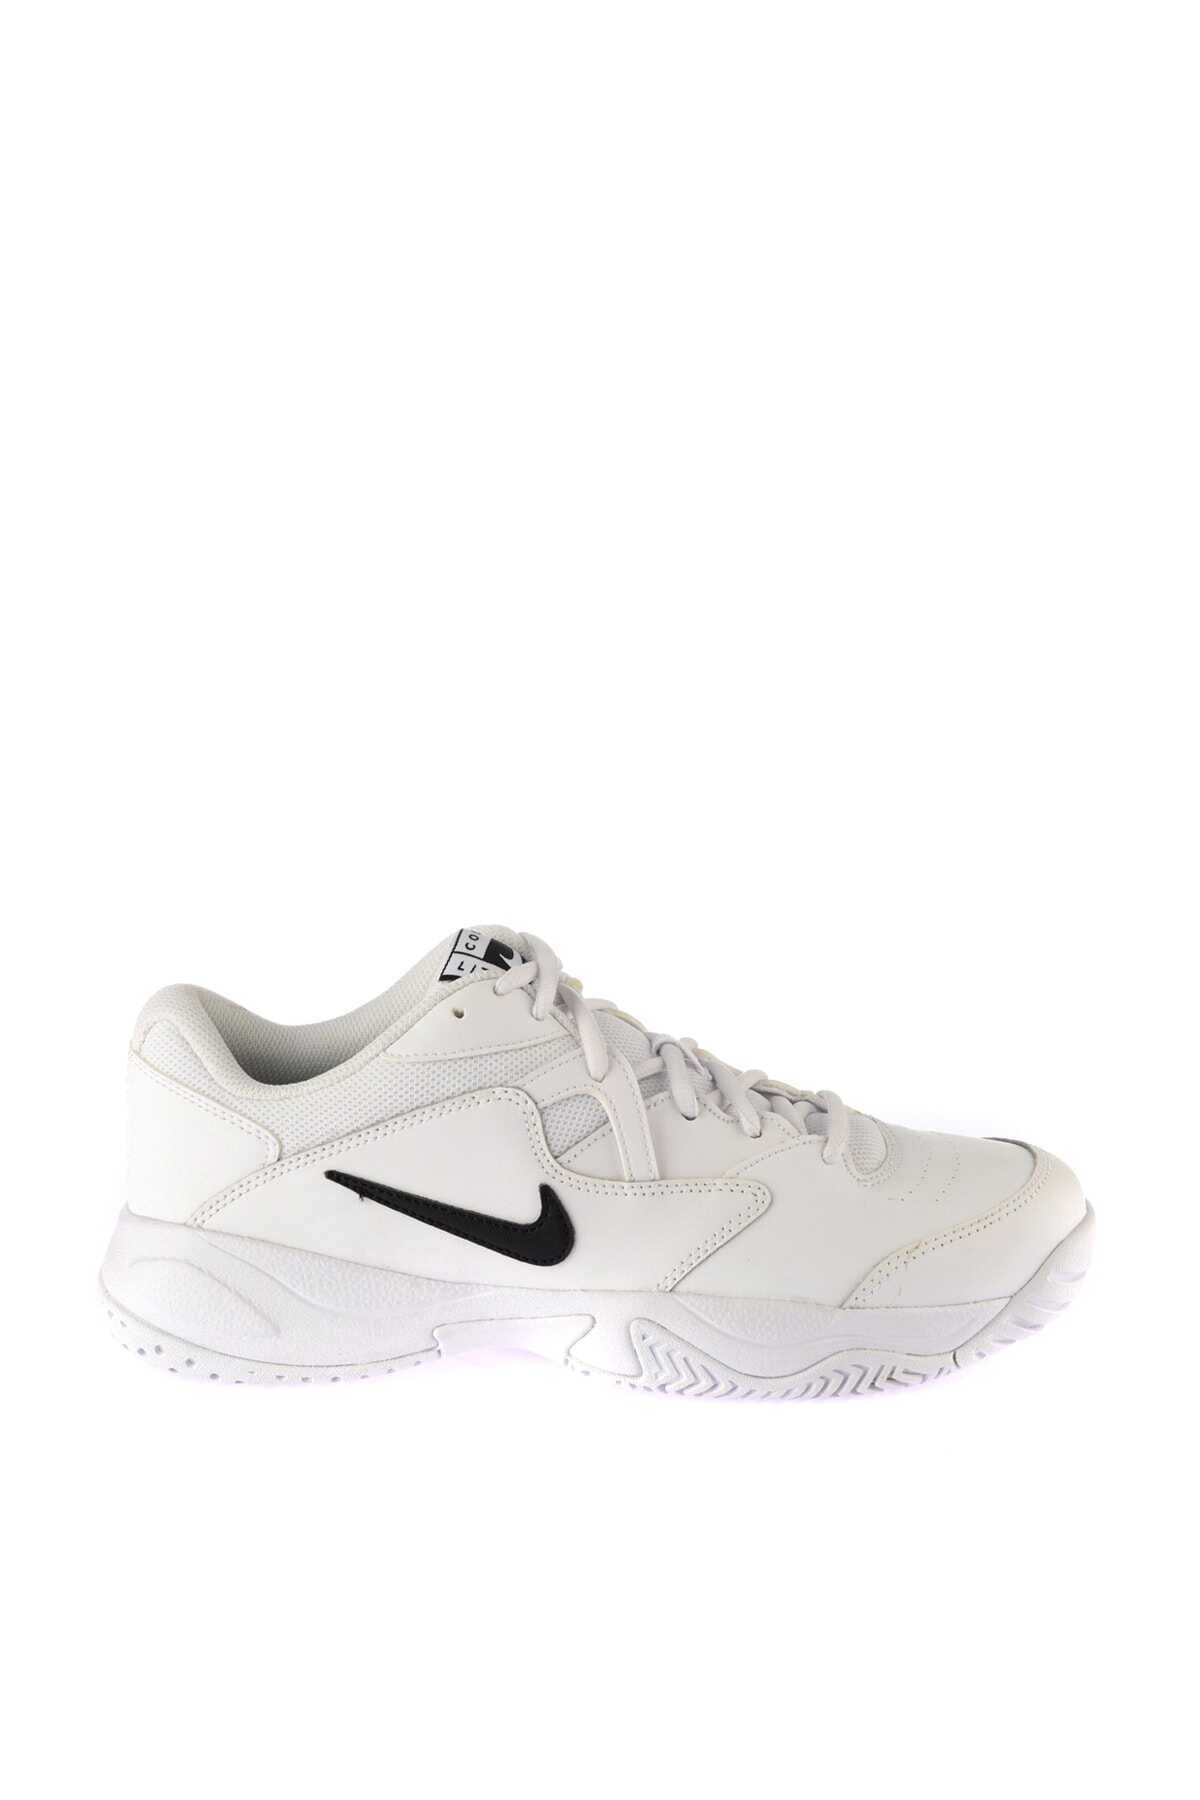 کفش تنیس مردانه سفید سری Court Lite 2 برند Nike 